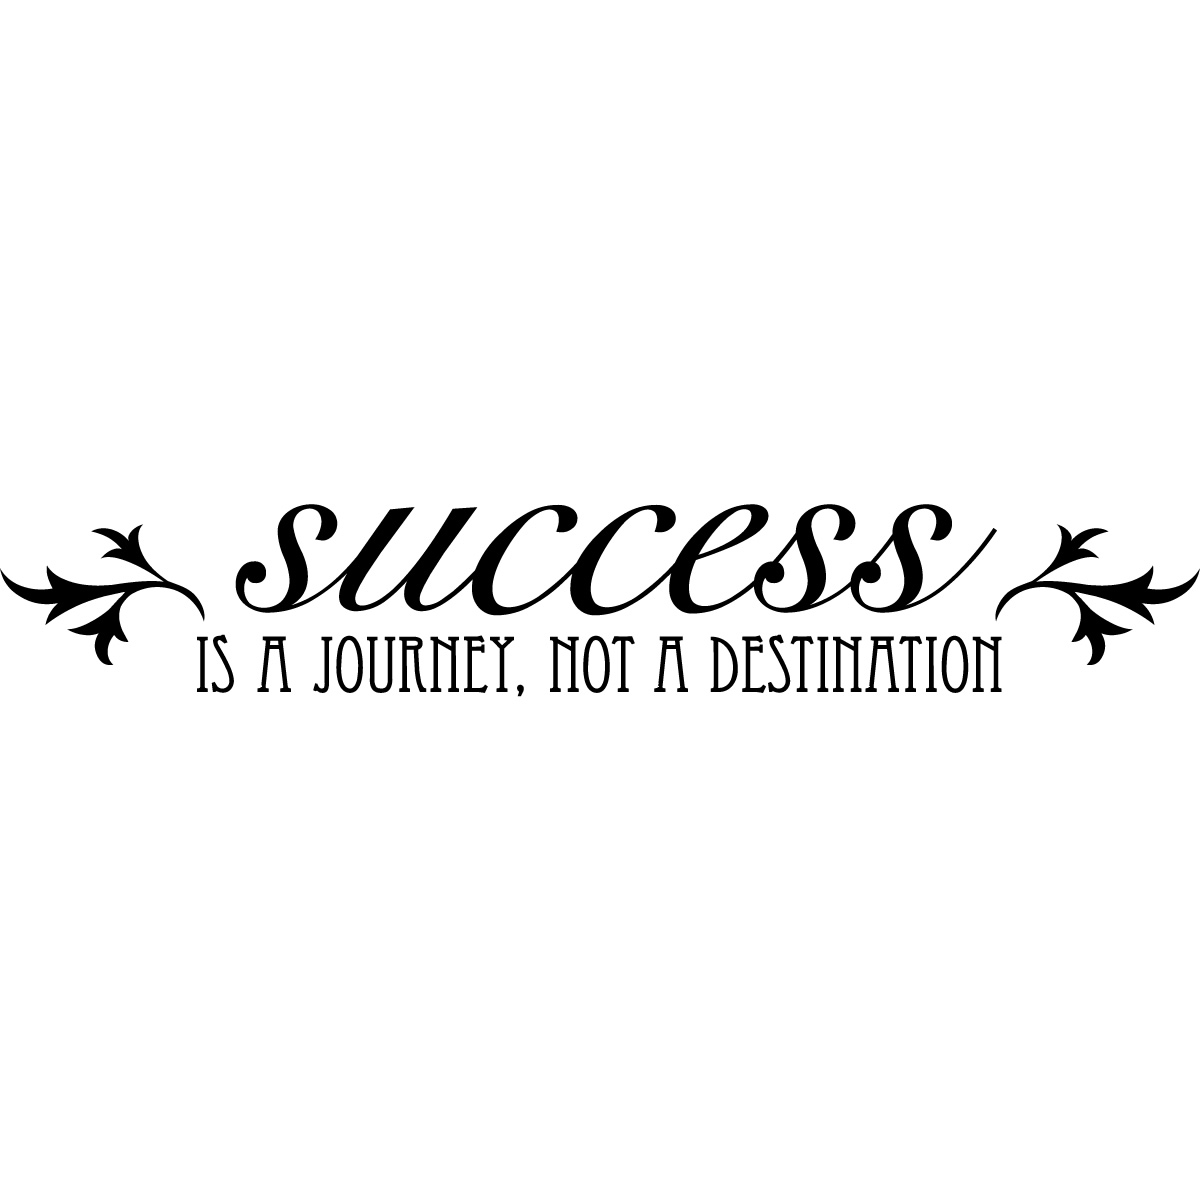 Success is a journey, not a destination